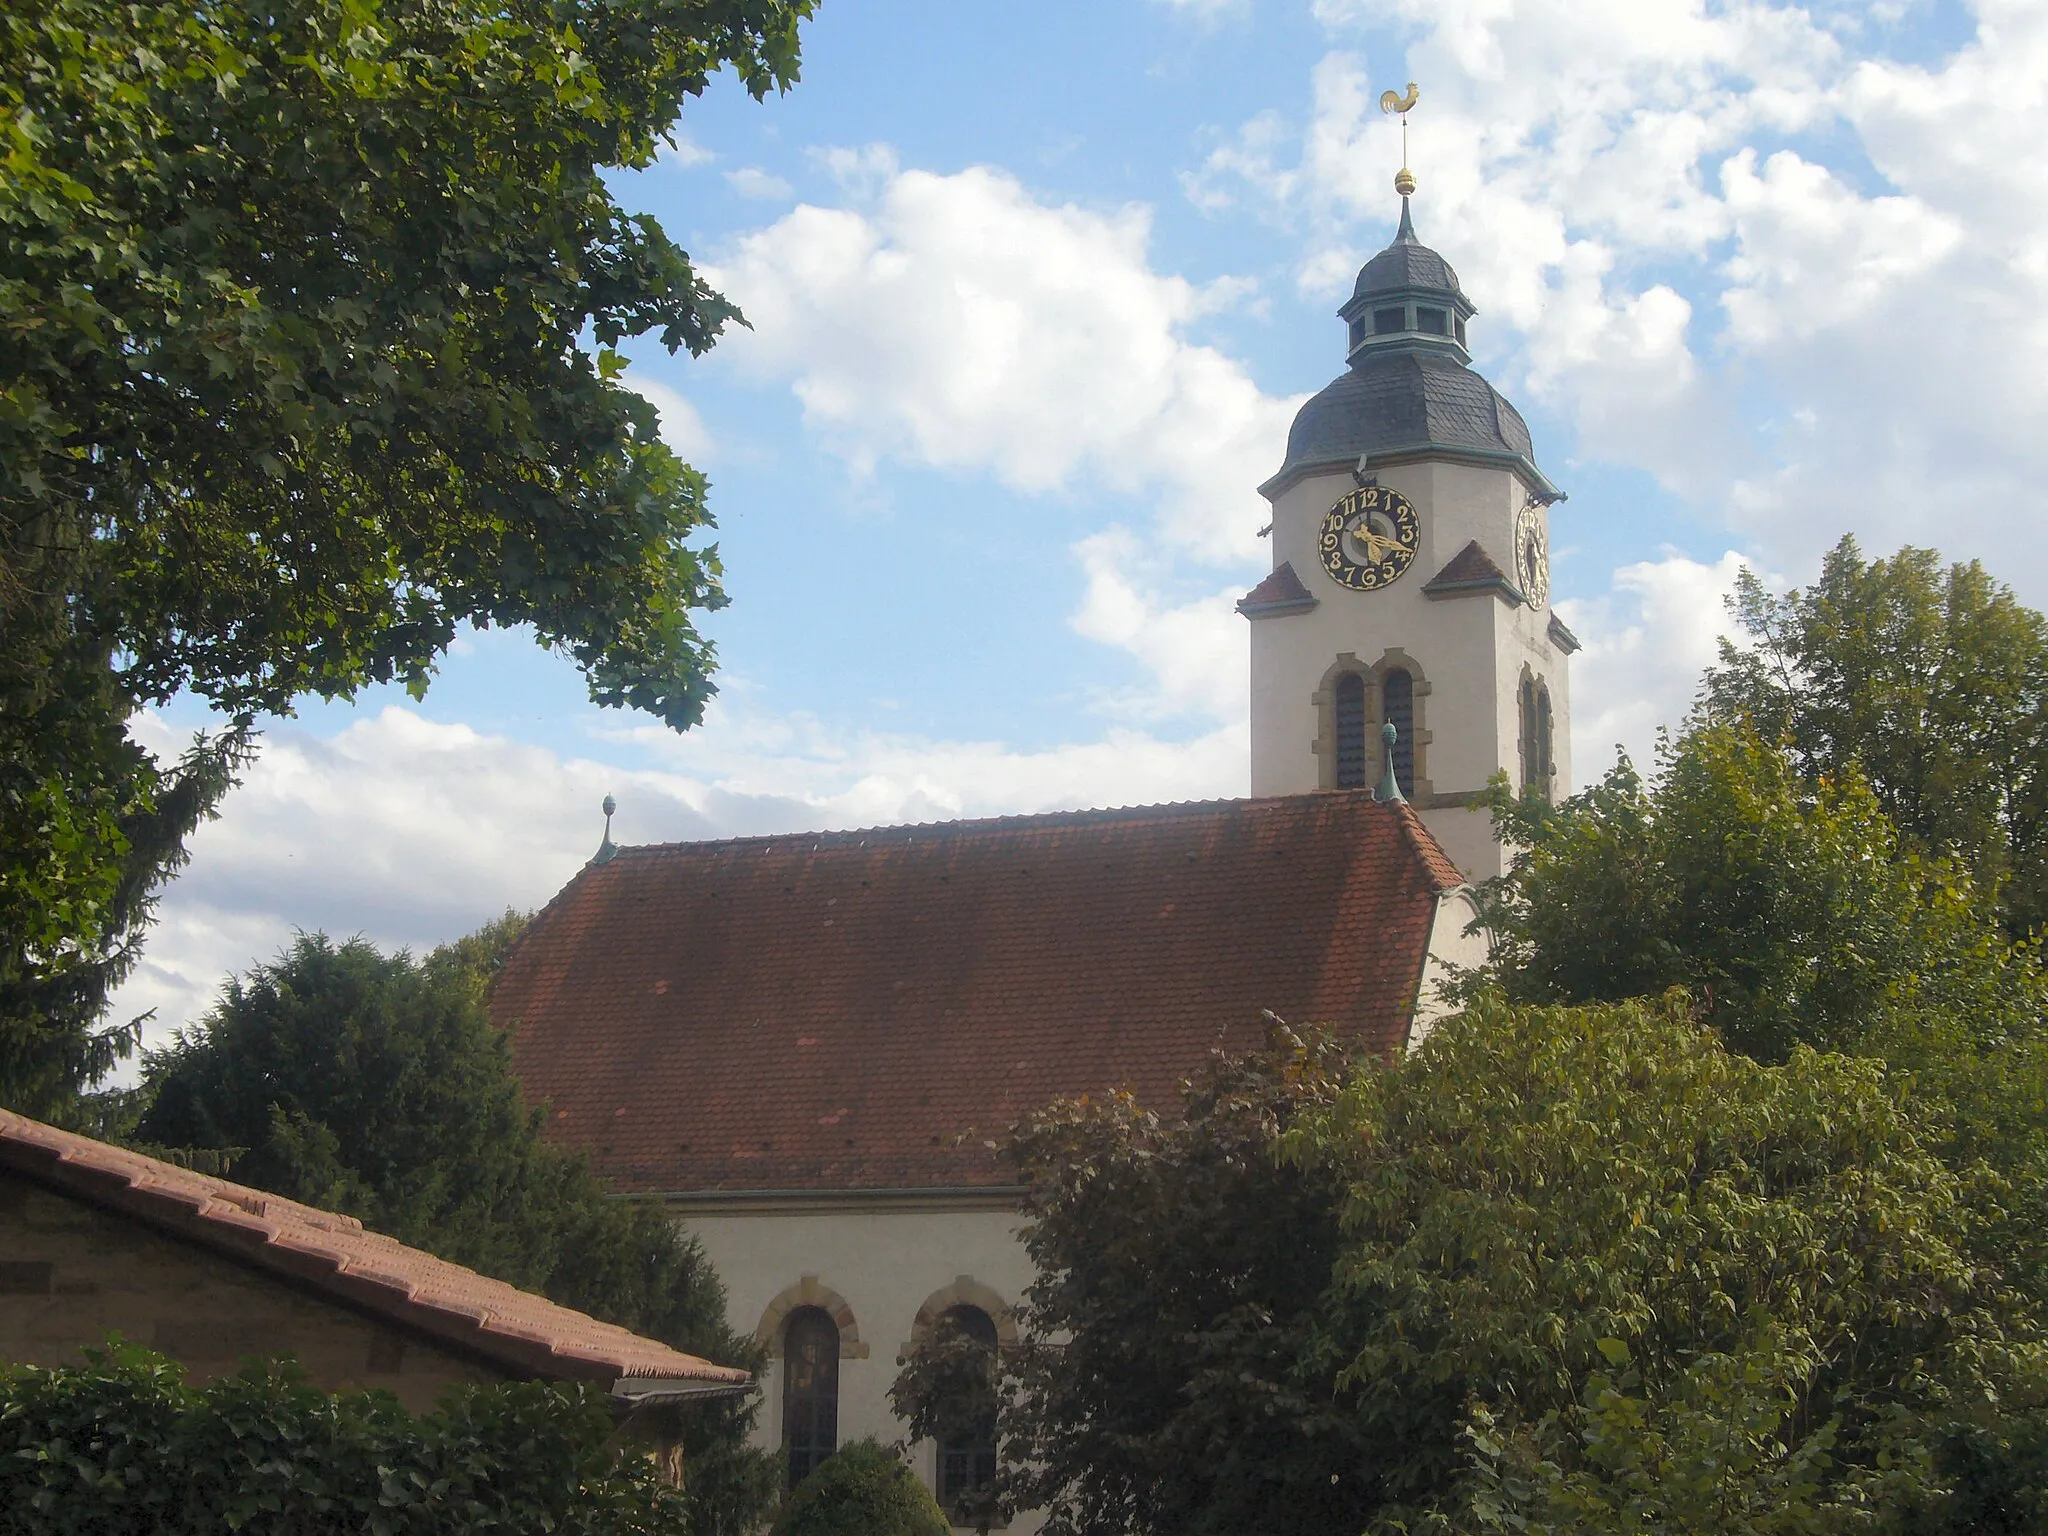 Photo showing: Christian church of Metterzimmern, village next to Bietigheim-Bissingen, Germany